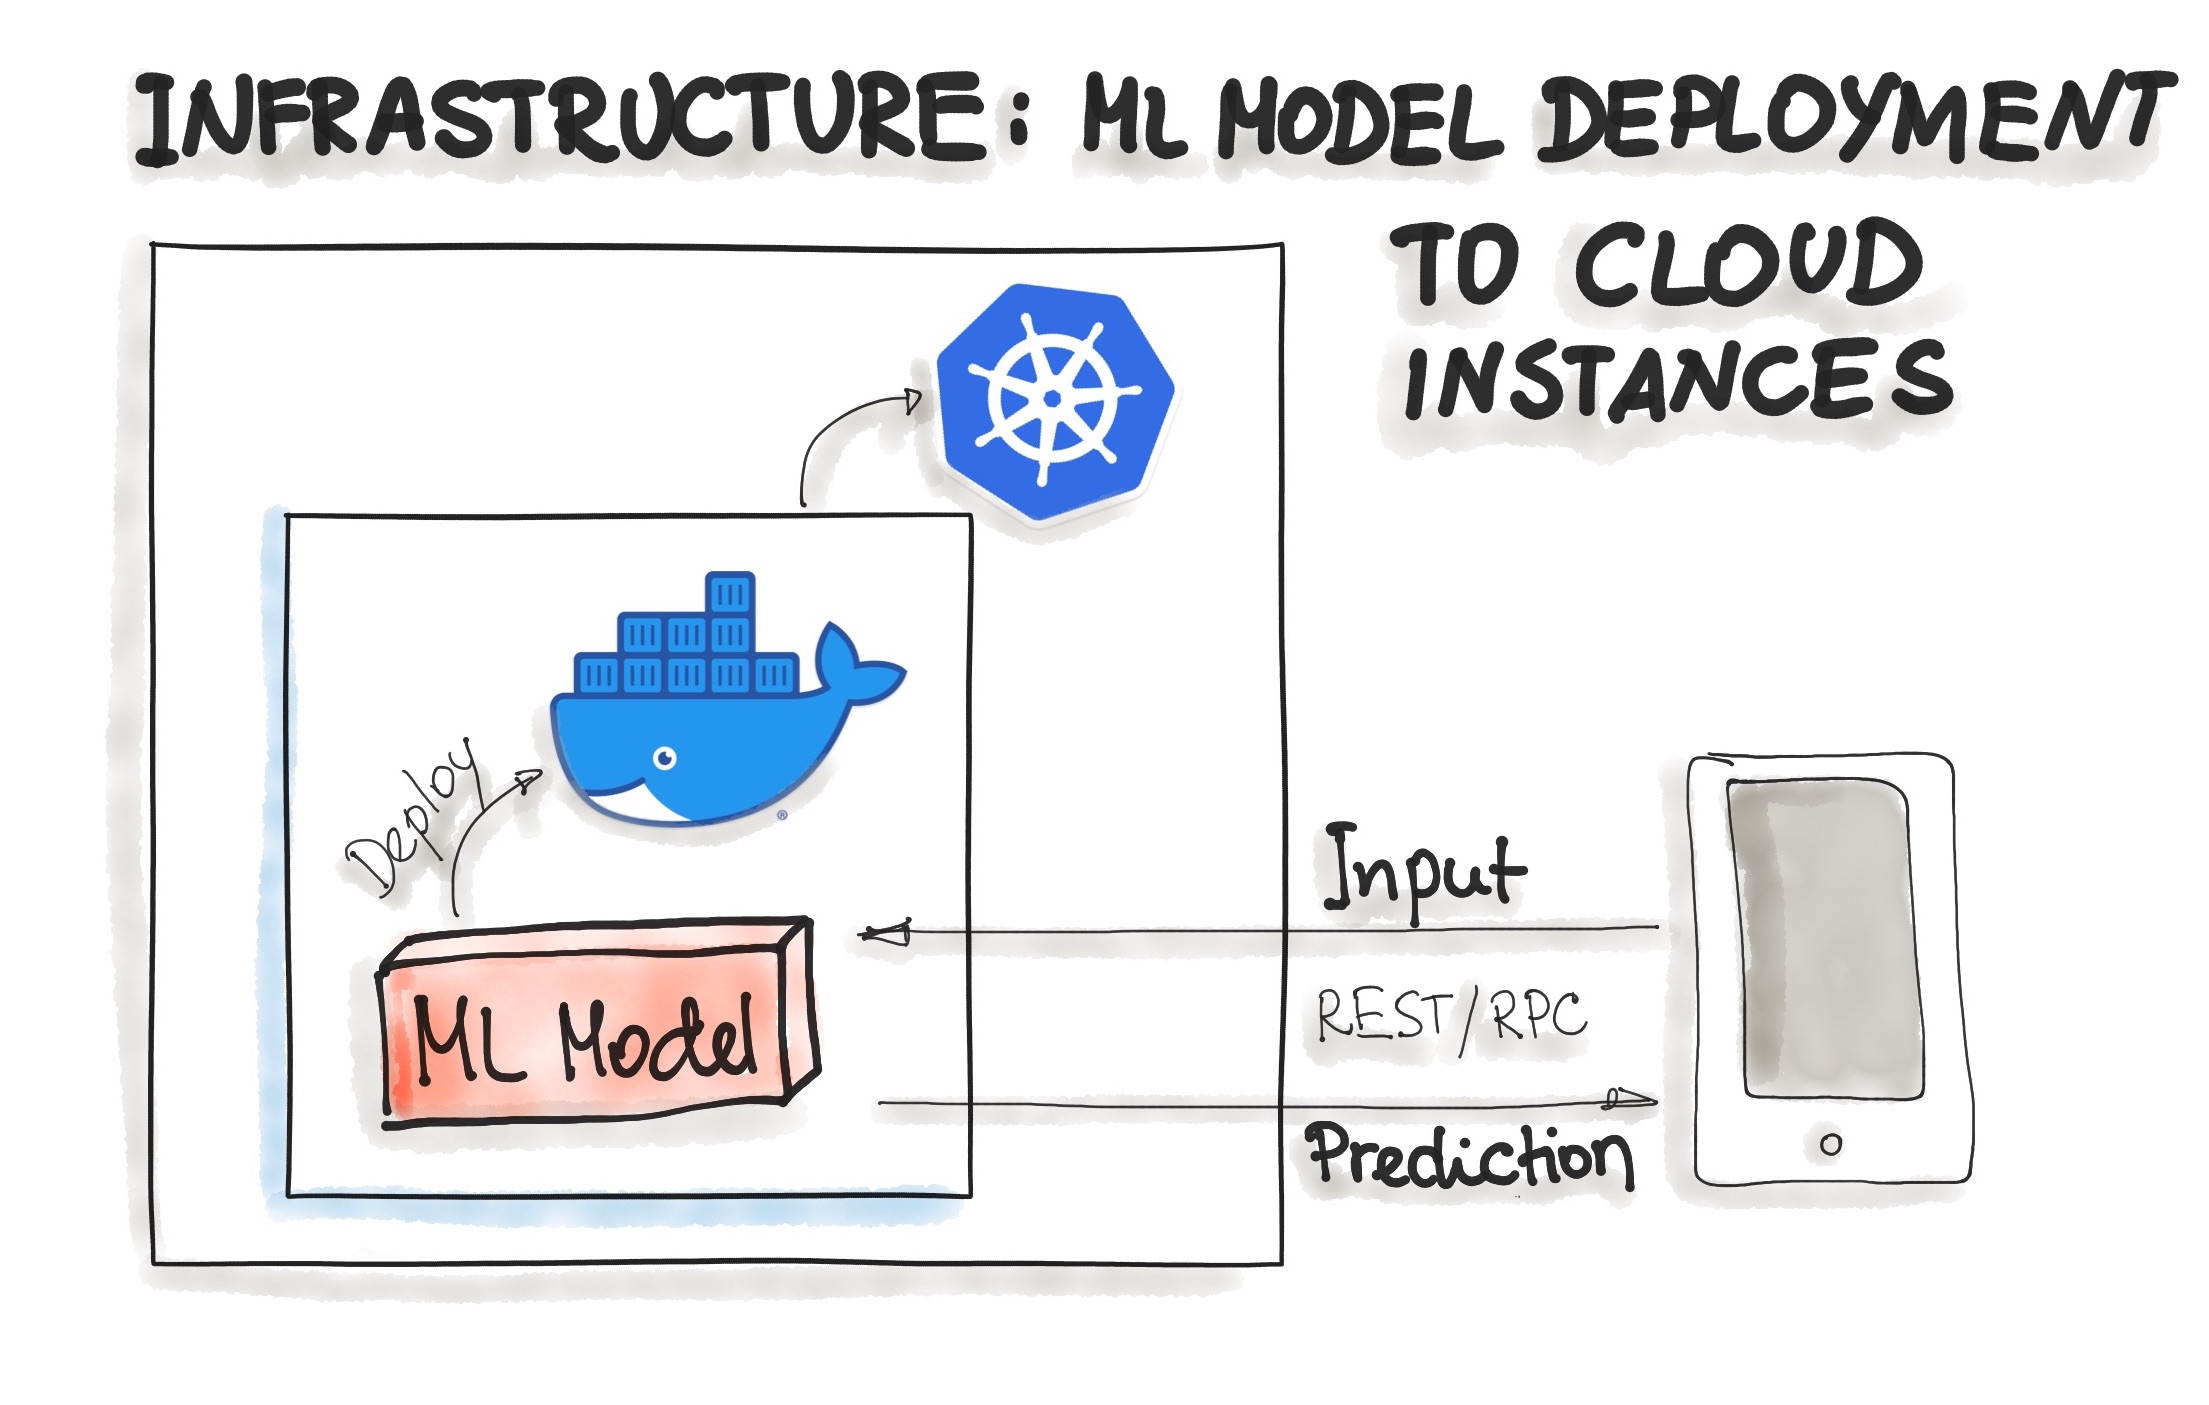 Docker Infrastructure for Model Deployment